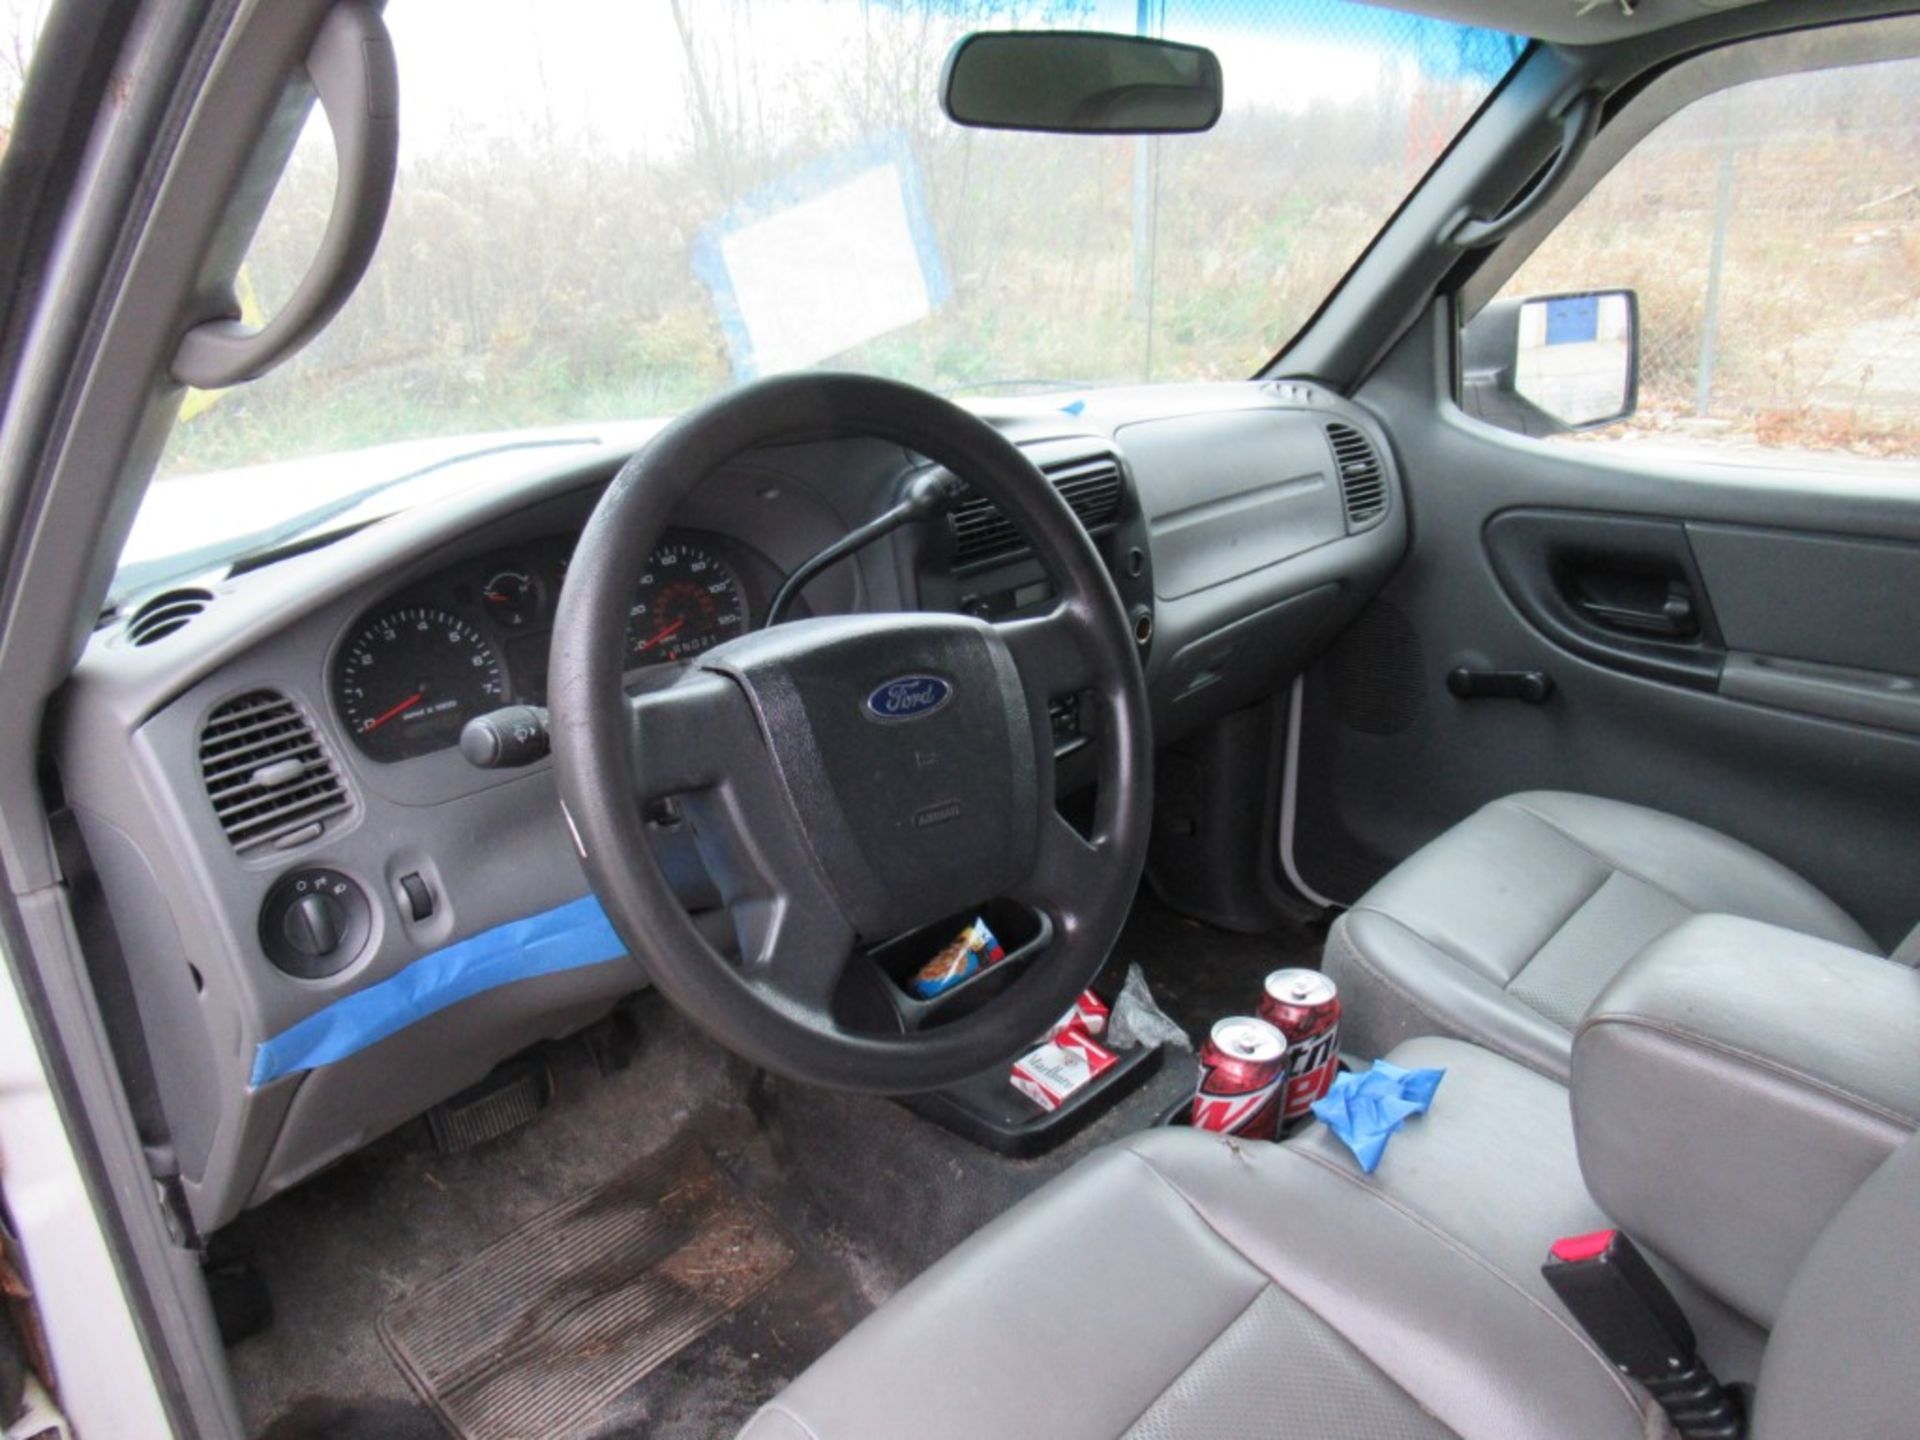 2008 Ford Ranger Pickup, VIN 1FTYR10D08PA90531 - Image 5 of 14